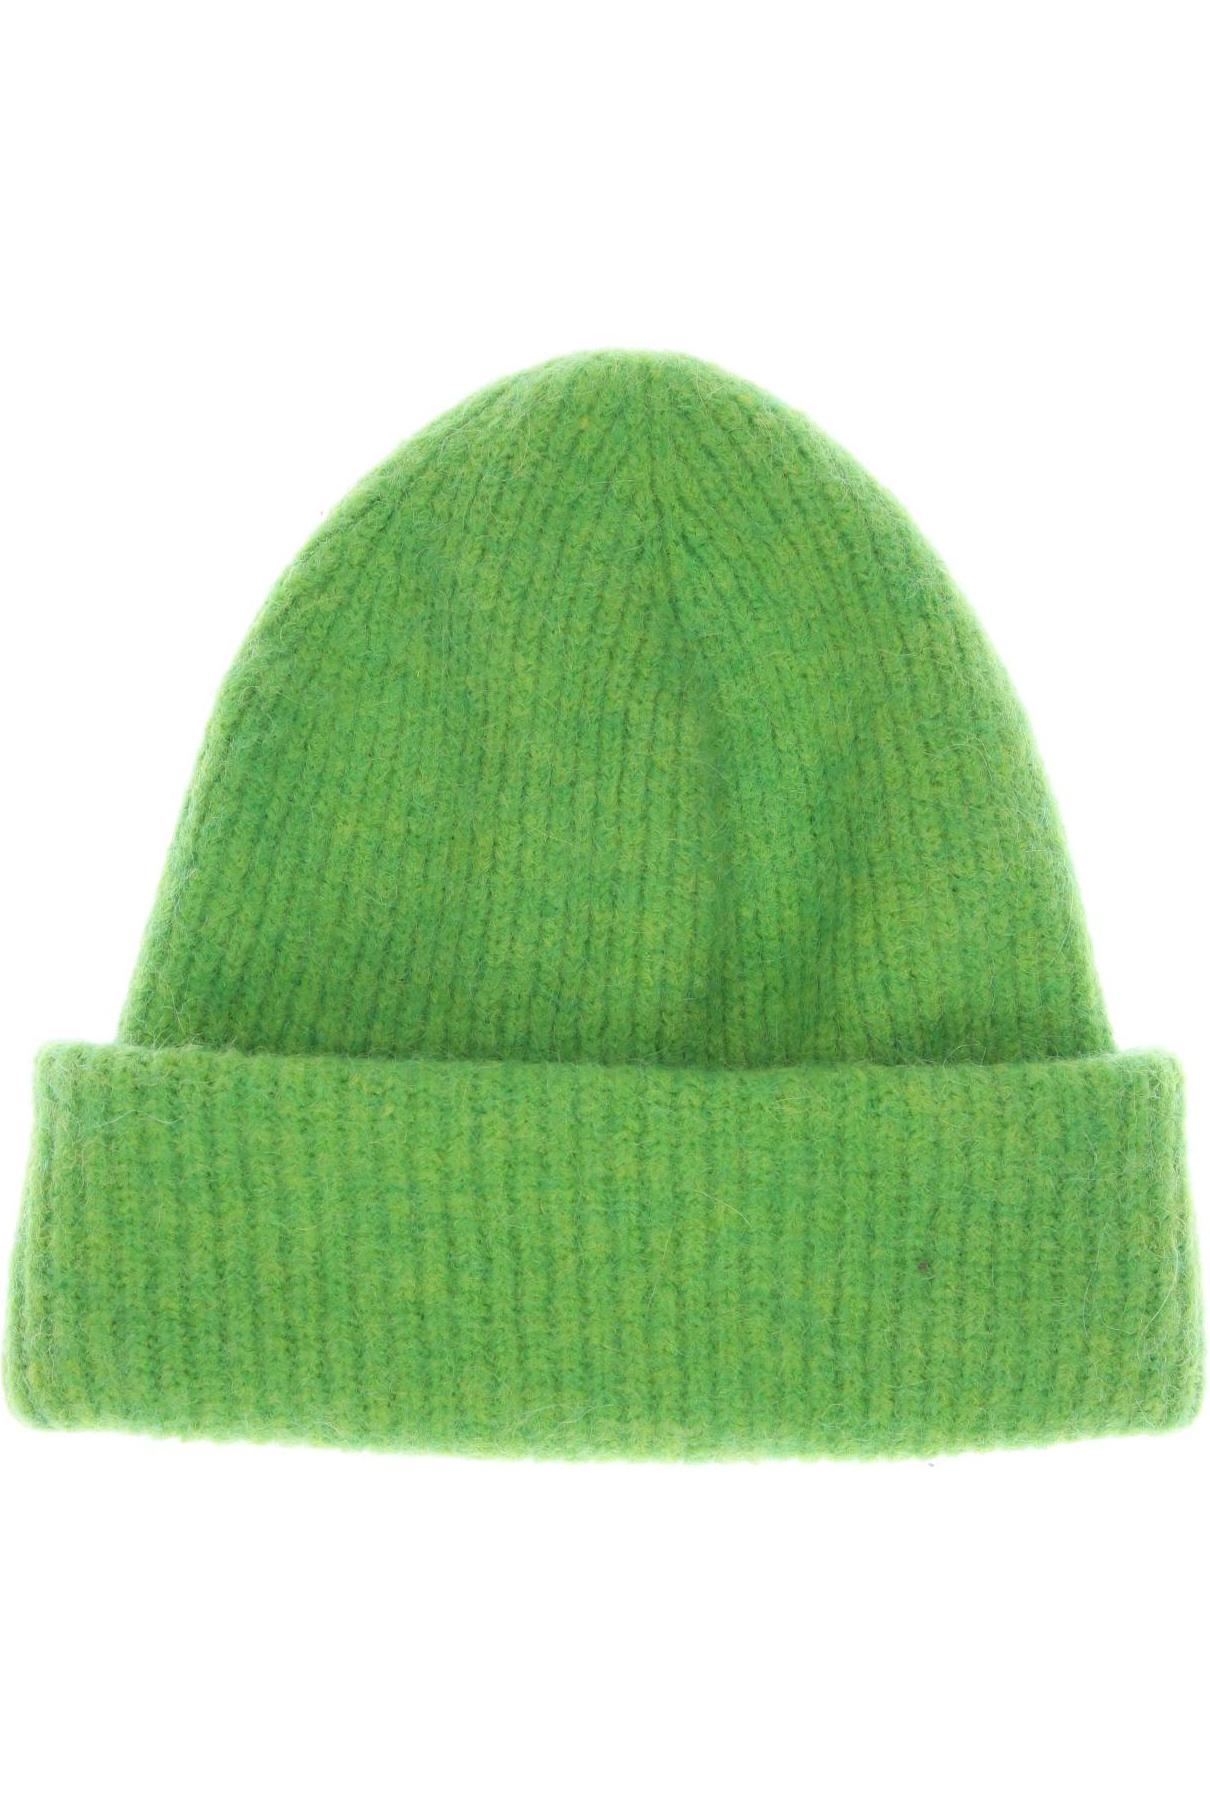 Arket Damen Hut/Mütze, grün von Arket